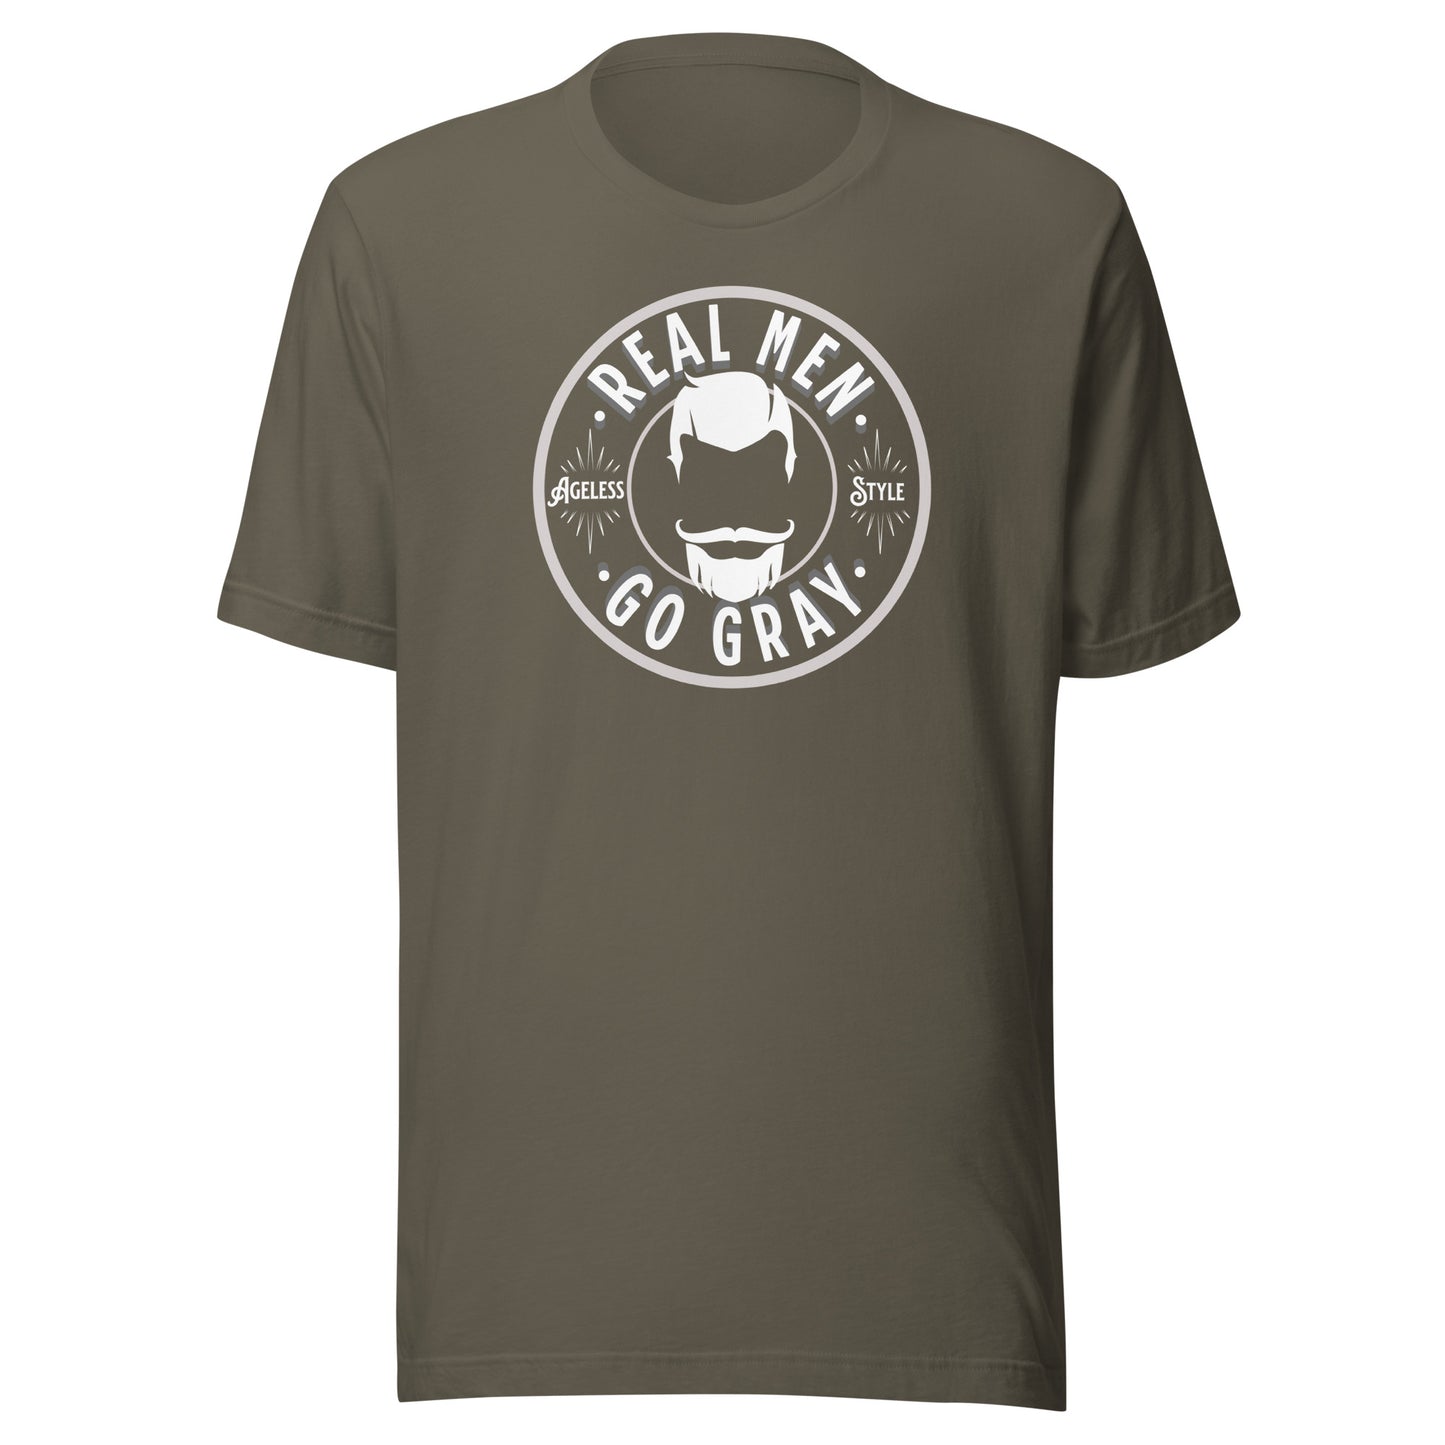 Real Men Go Gray Unisex t-shirt